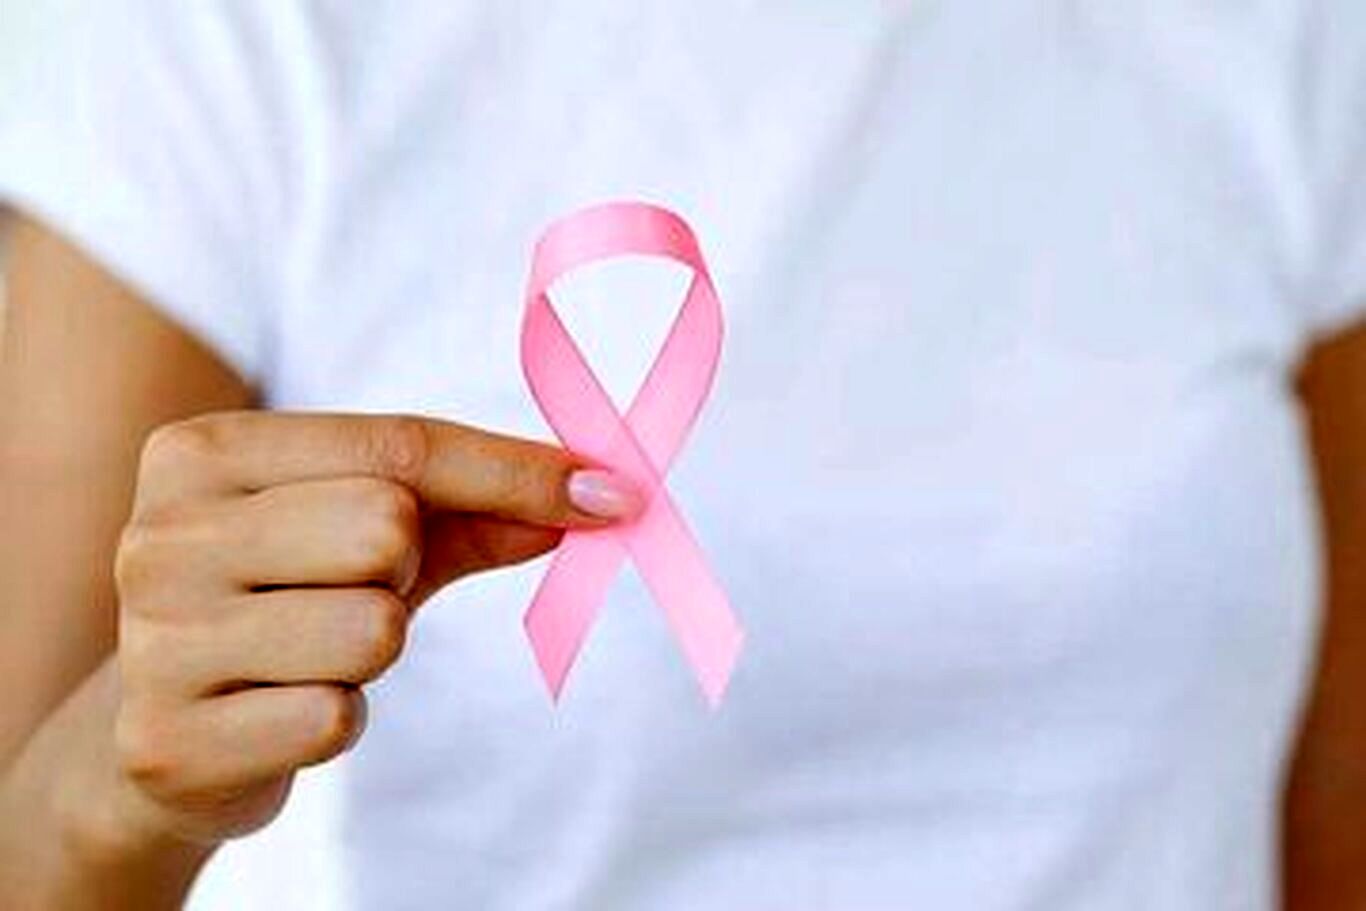 ۱۲ خوراکی پیشگیری کننده از بروز سرطان پستان